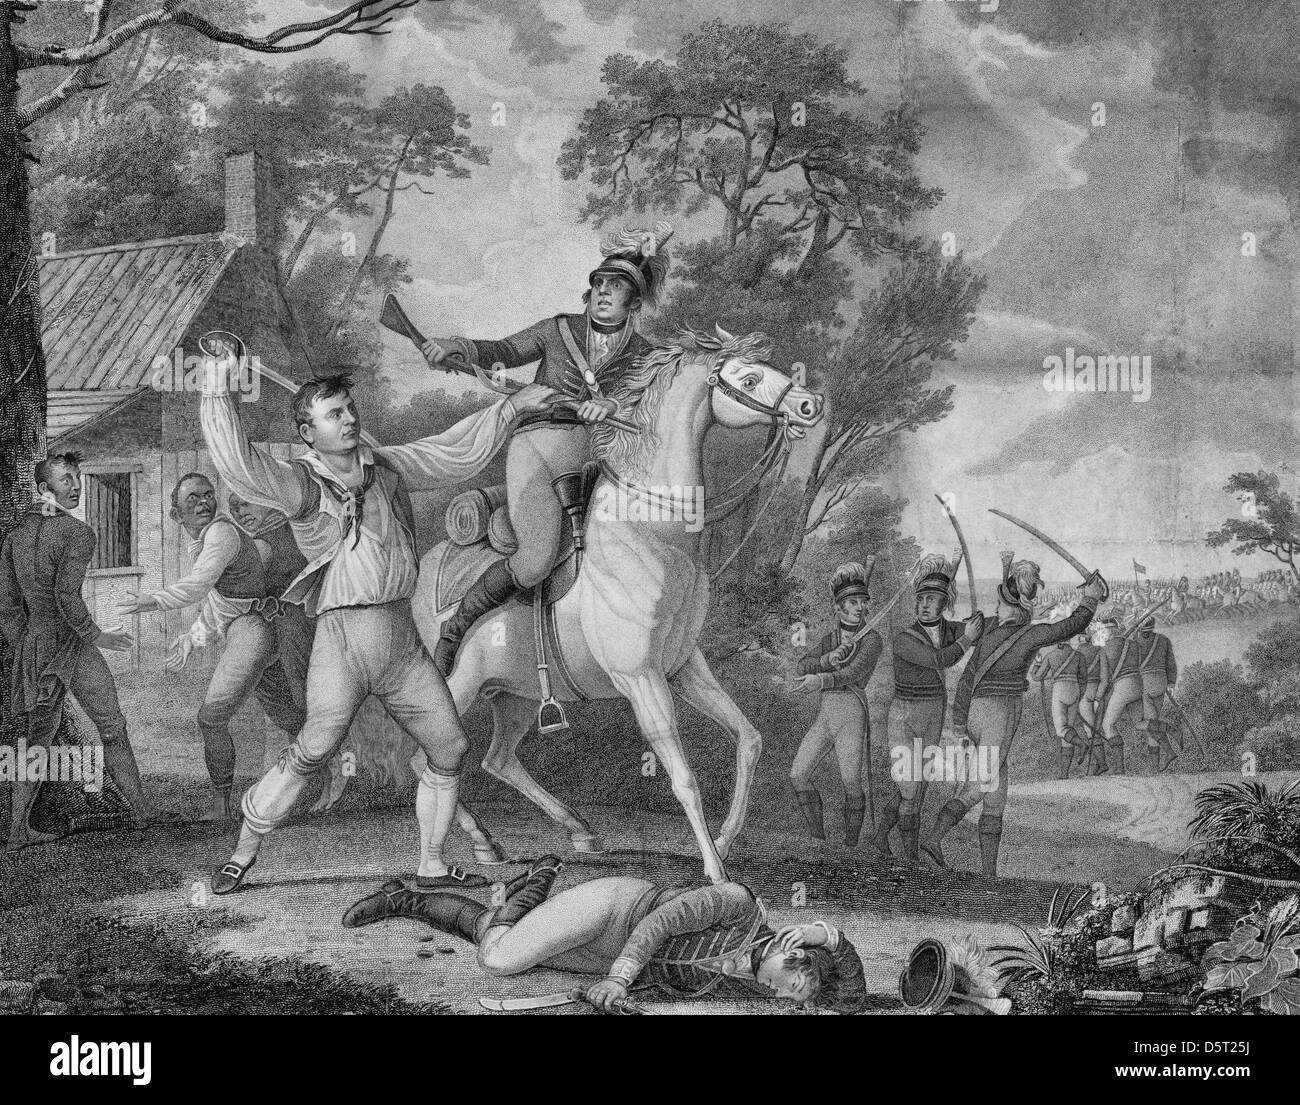 Diese Darstellung des Peter Francisco tapfere Aktion mit neun Tarletons Kavallerie während Amerikanischer revolutionärer Krieg Stockfoto